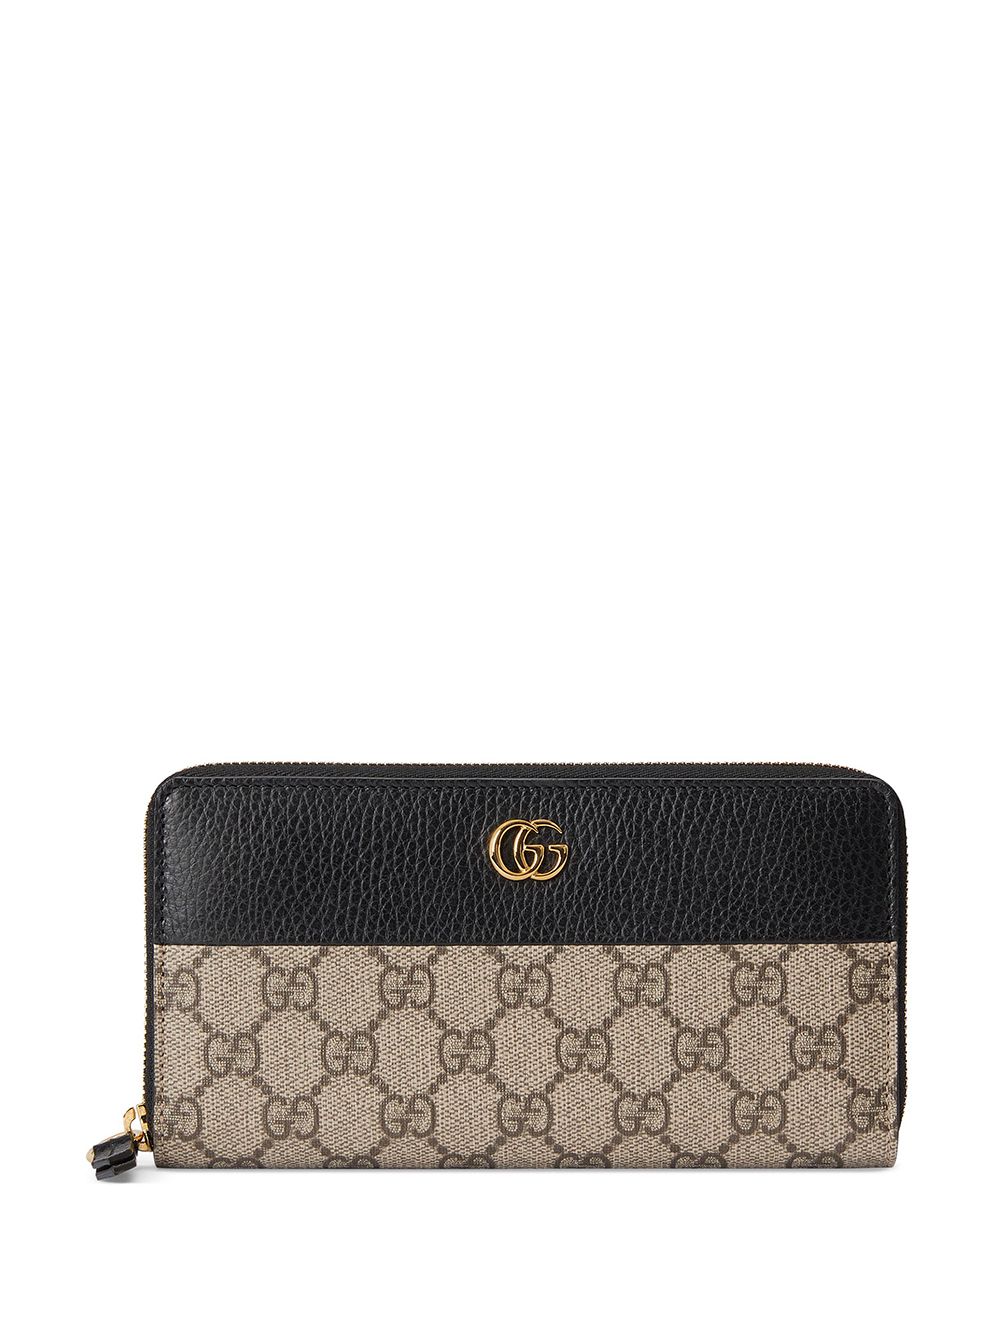 Gucci GG Marmont zip-around wallet - Neutrals